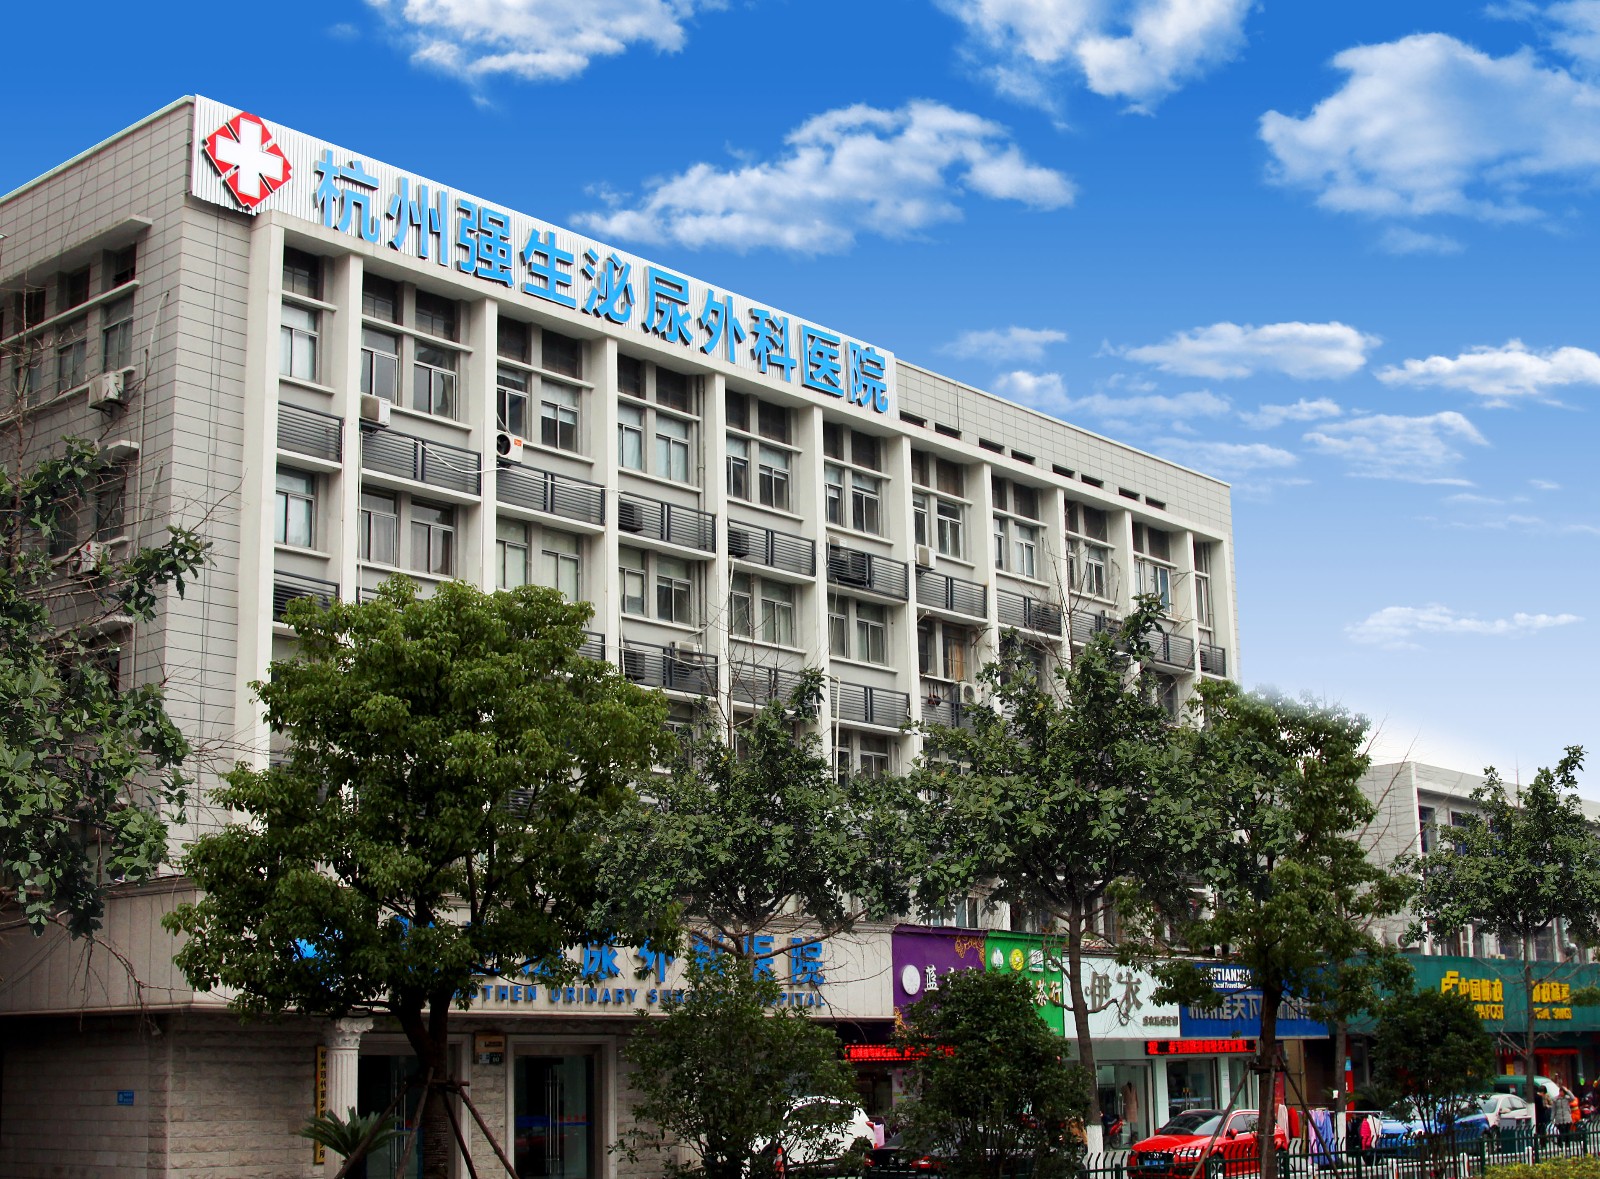 杭州强生泌尿外科医院